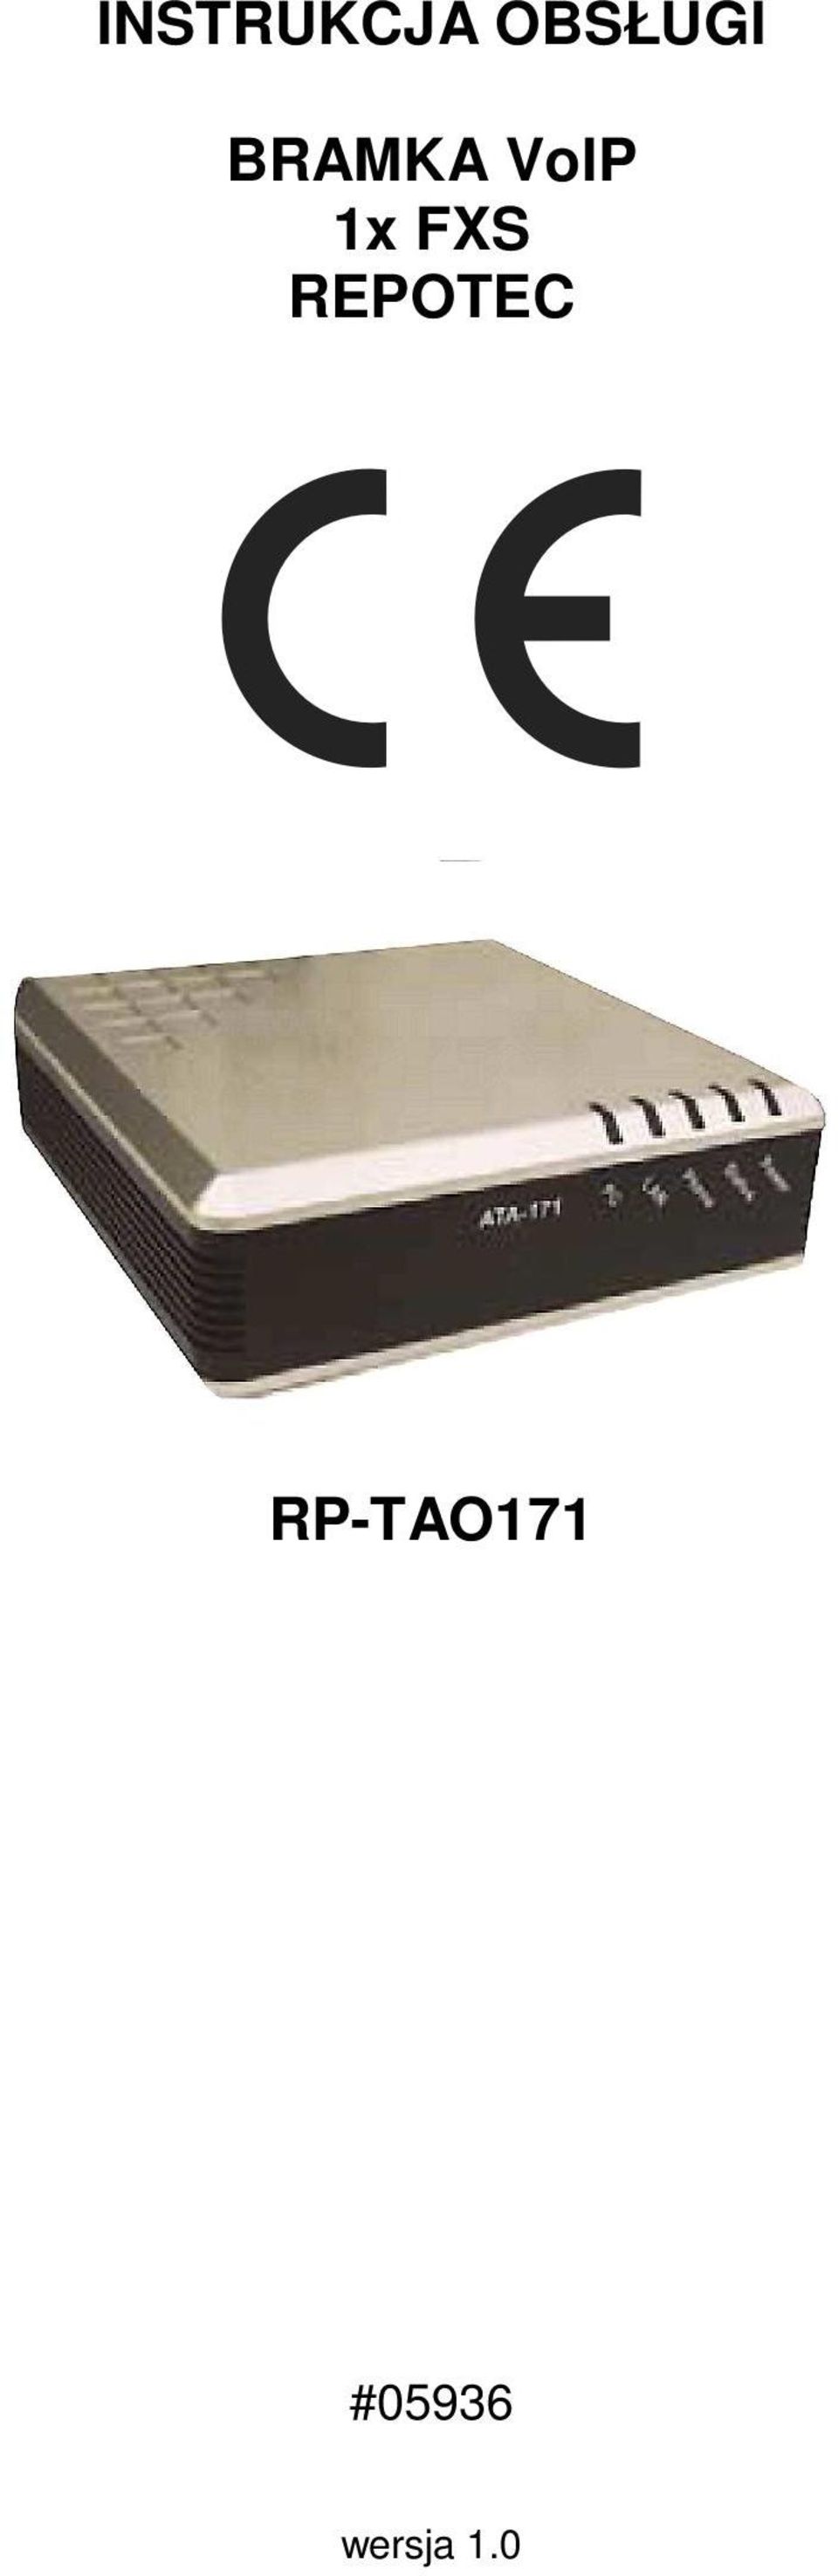 REPOTEC RP-TAO171